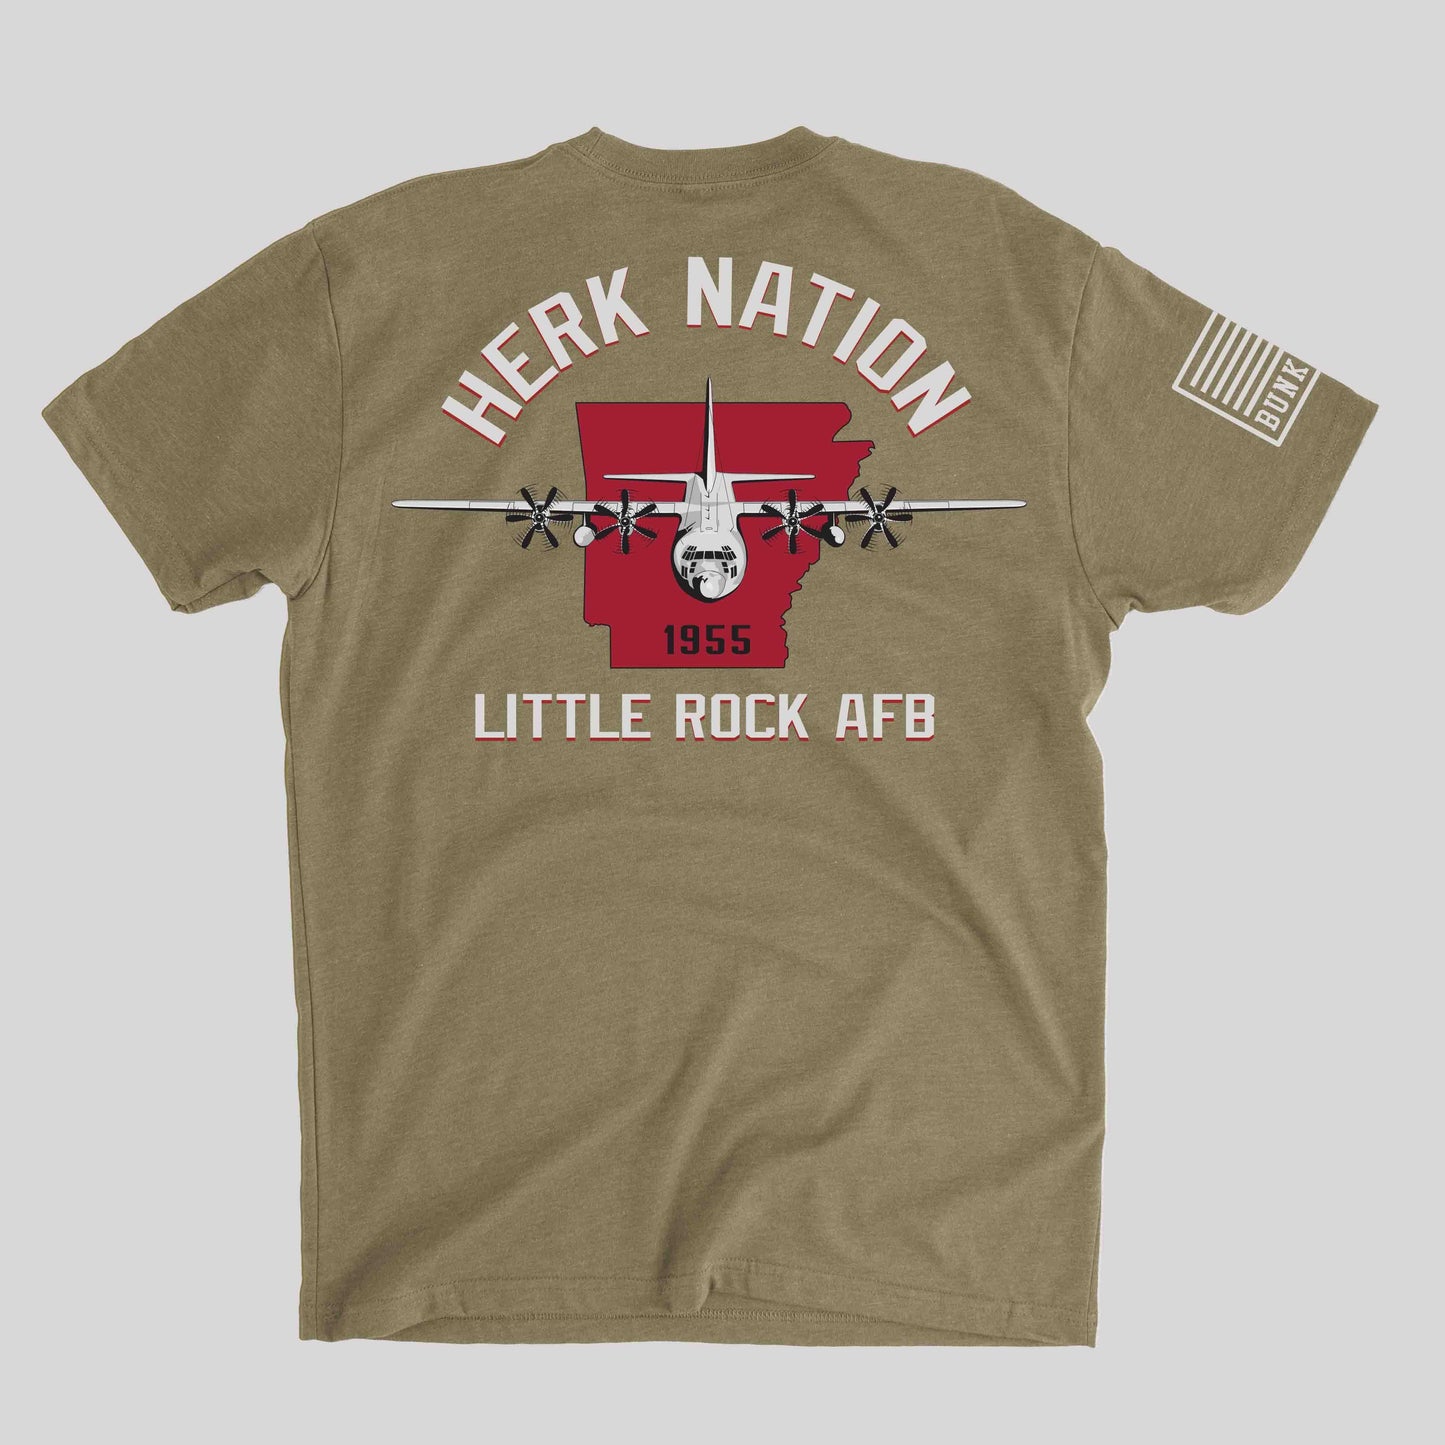 Herk Nation - Little Rock AFB T-Shirt